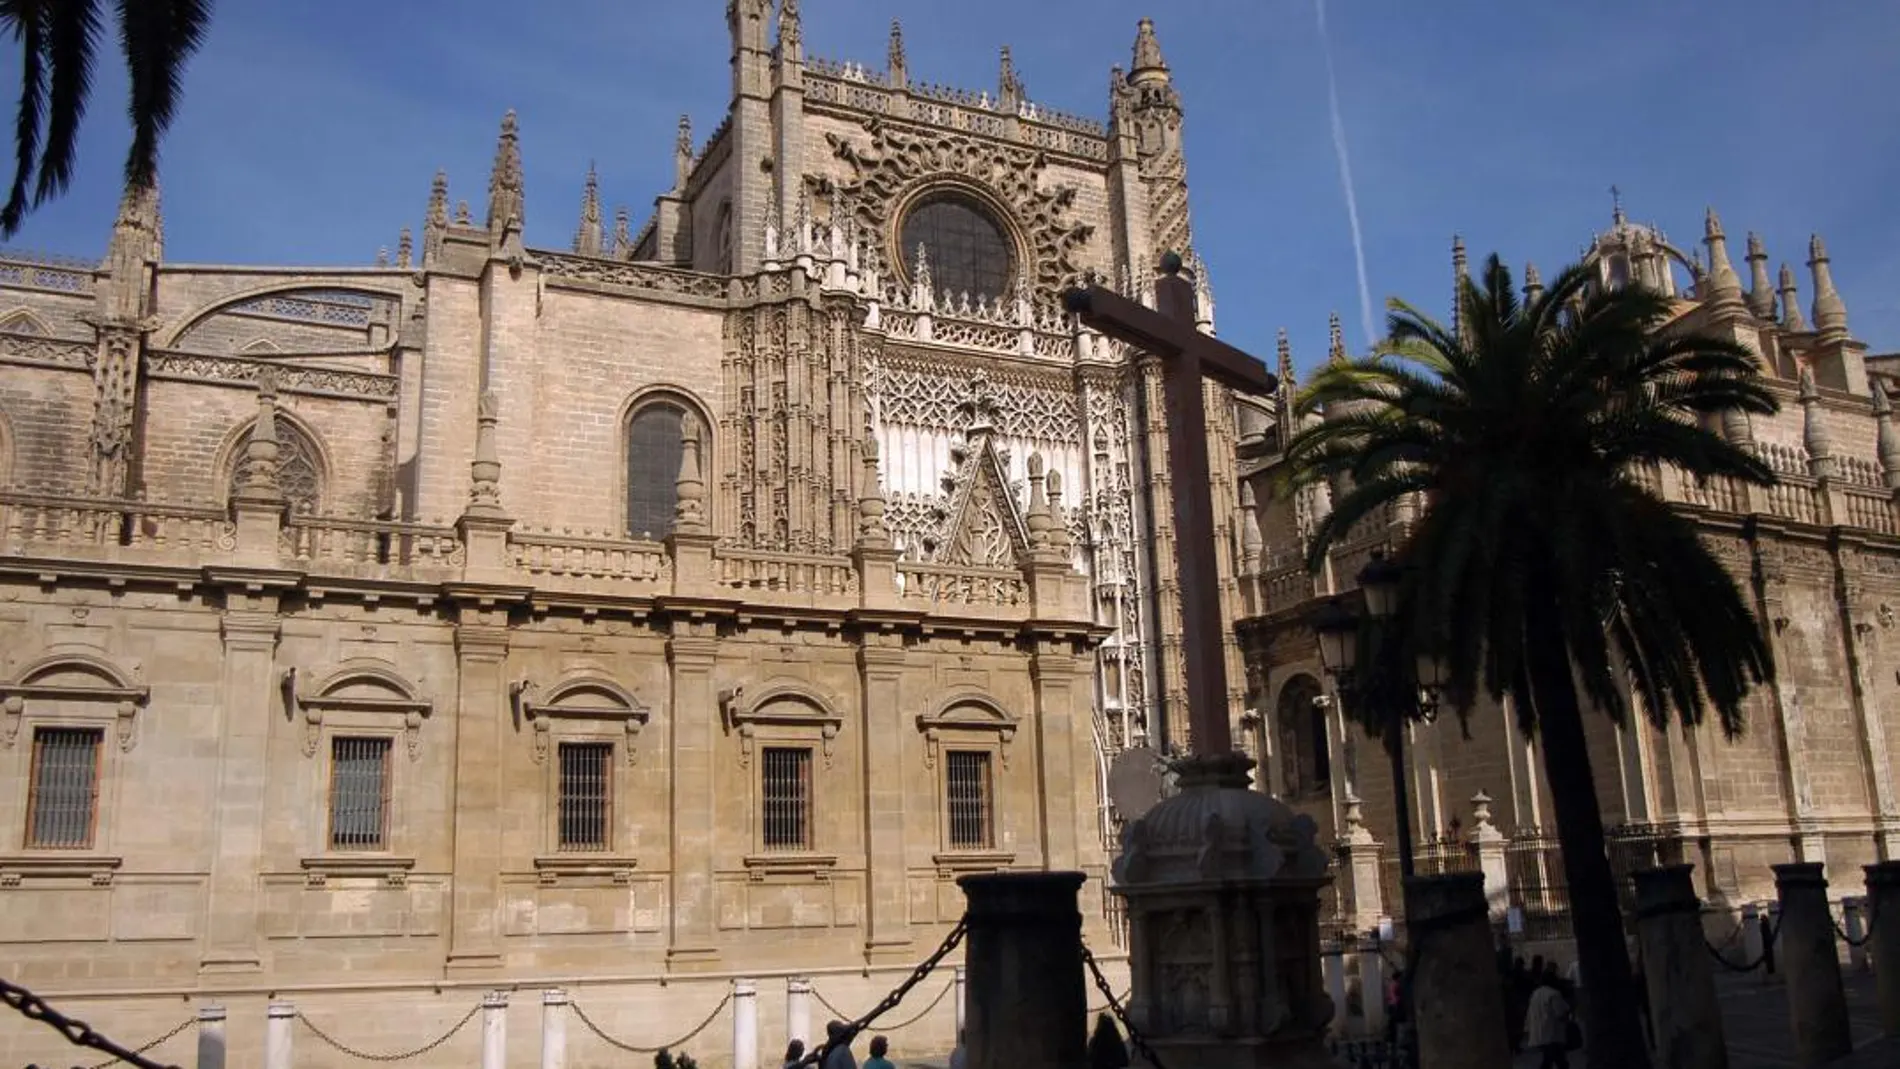 La Catedral y la Giralda fueron inscritos en el Registro de la Propiedad por la Iglesia